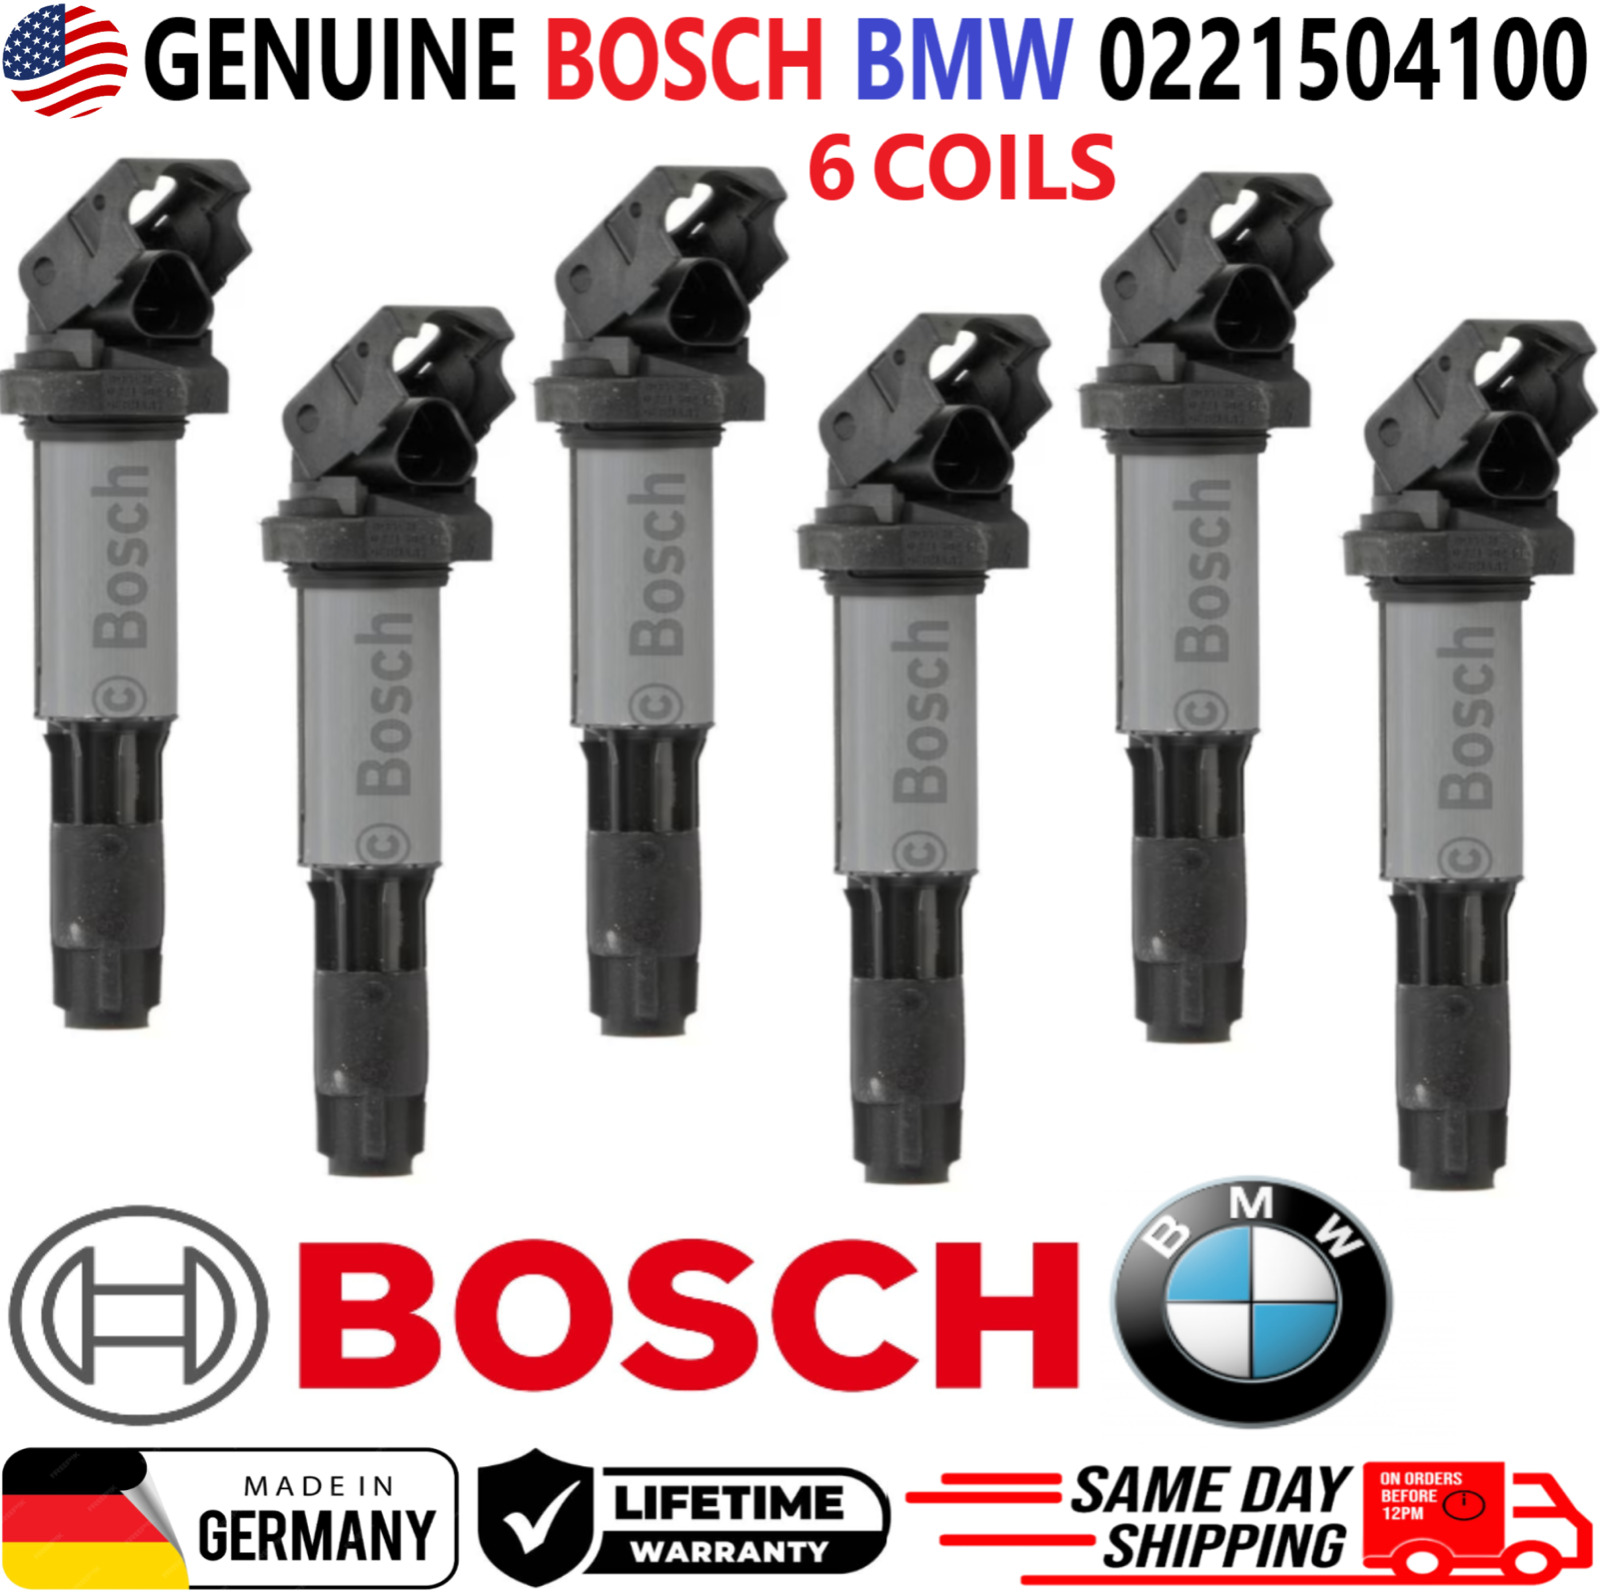 GENUINE BOSCH BMW x6 Ignition Coils For 2001-2010 BMW I4 I6 V8 V12, 0221504100